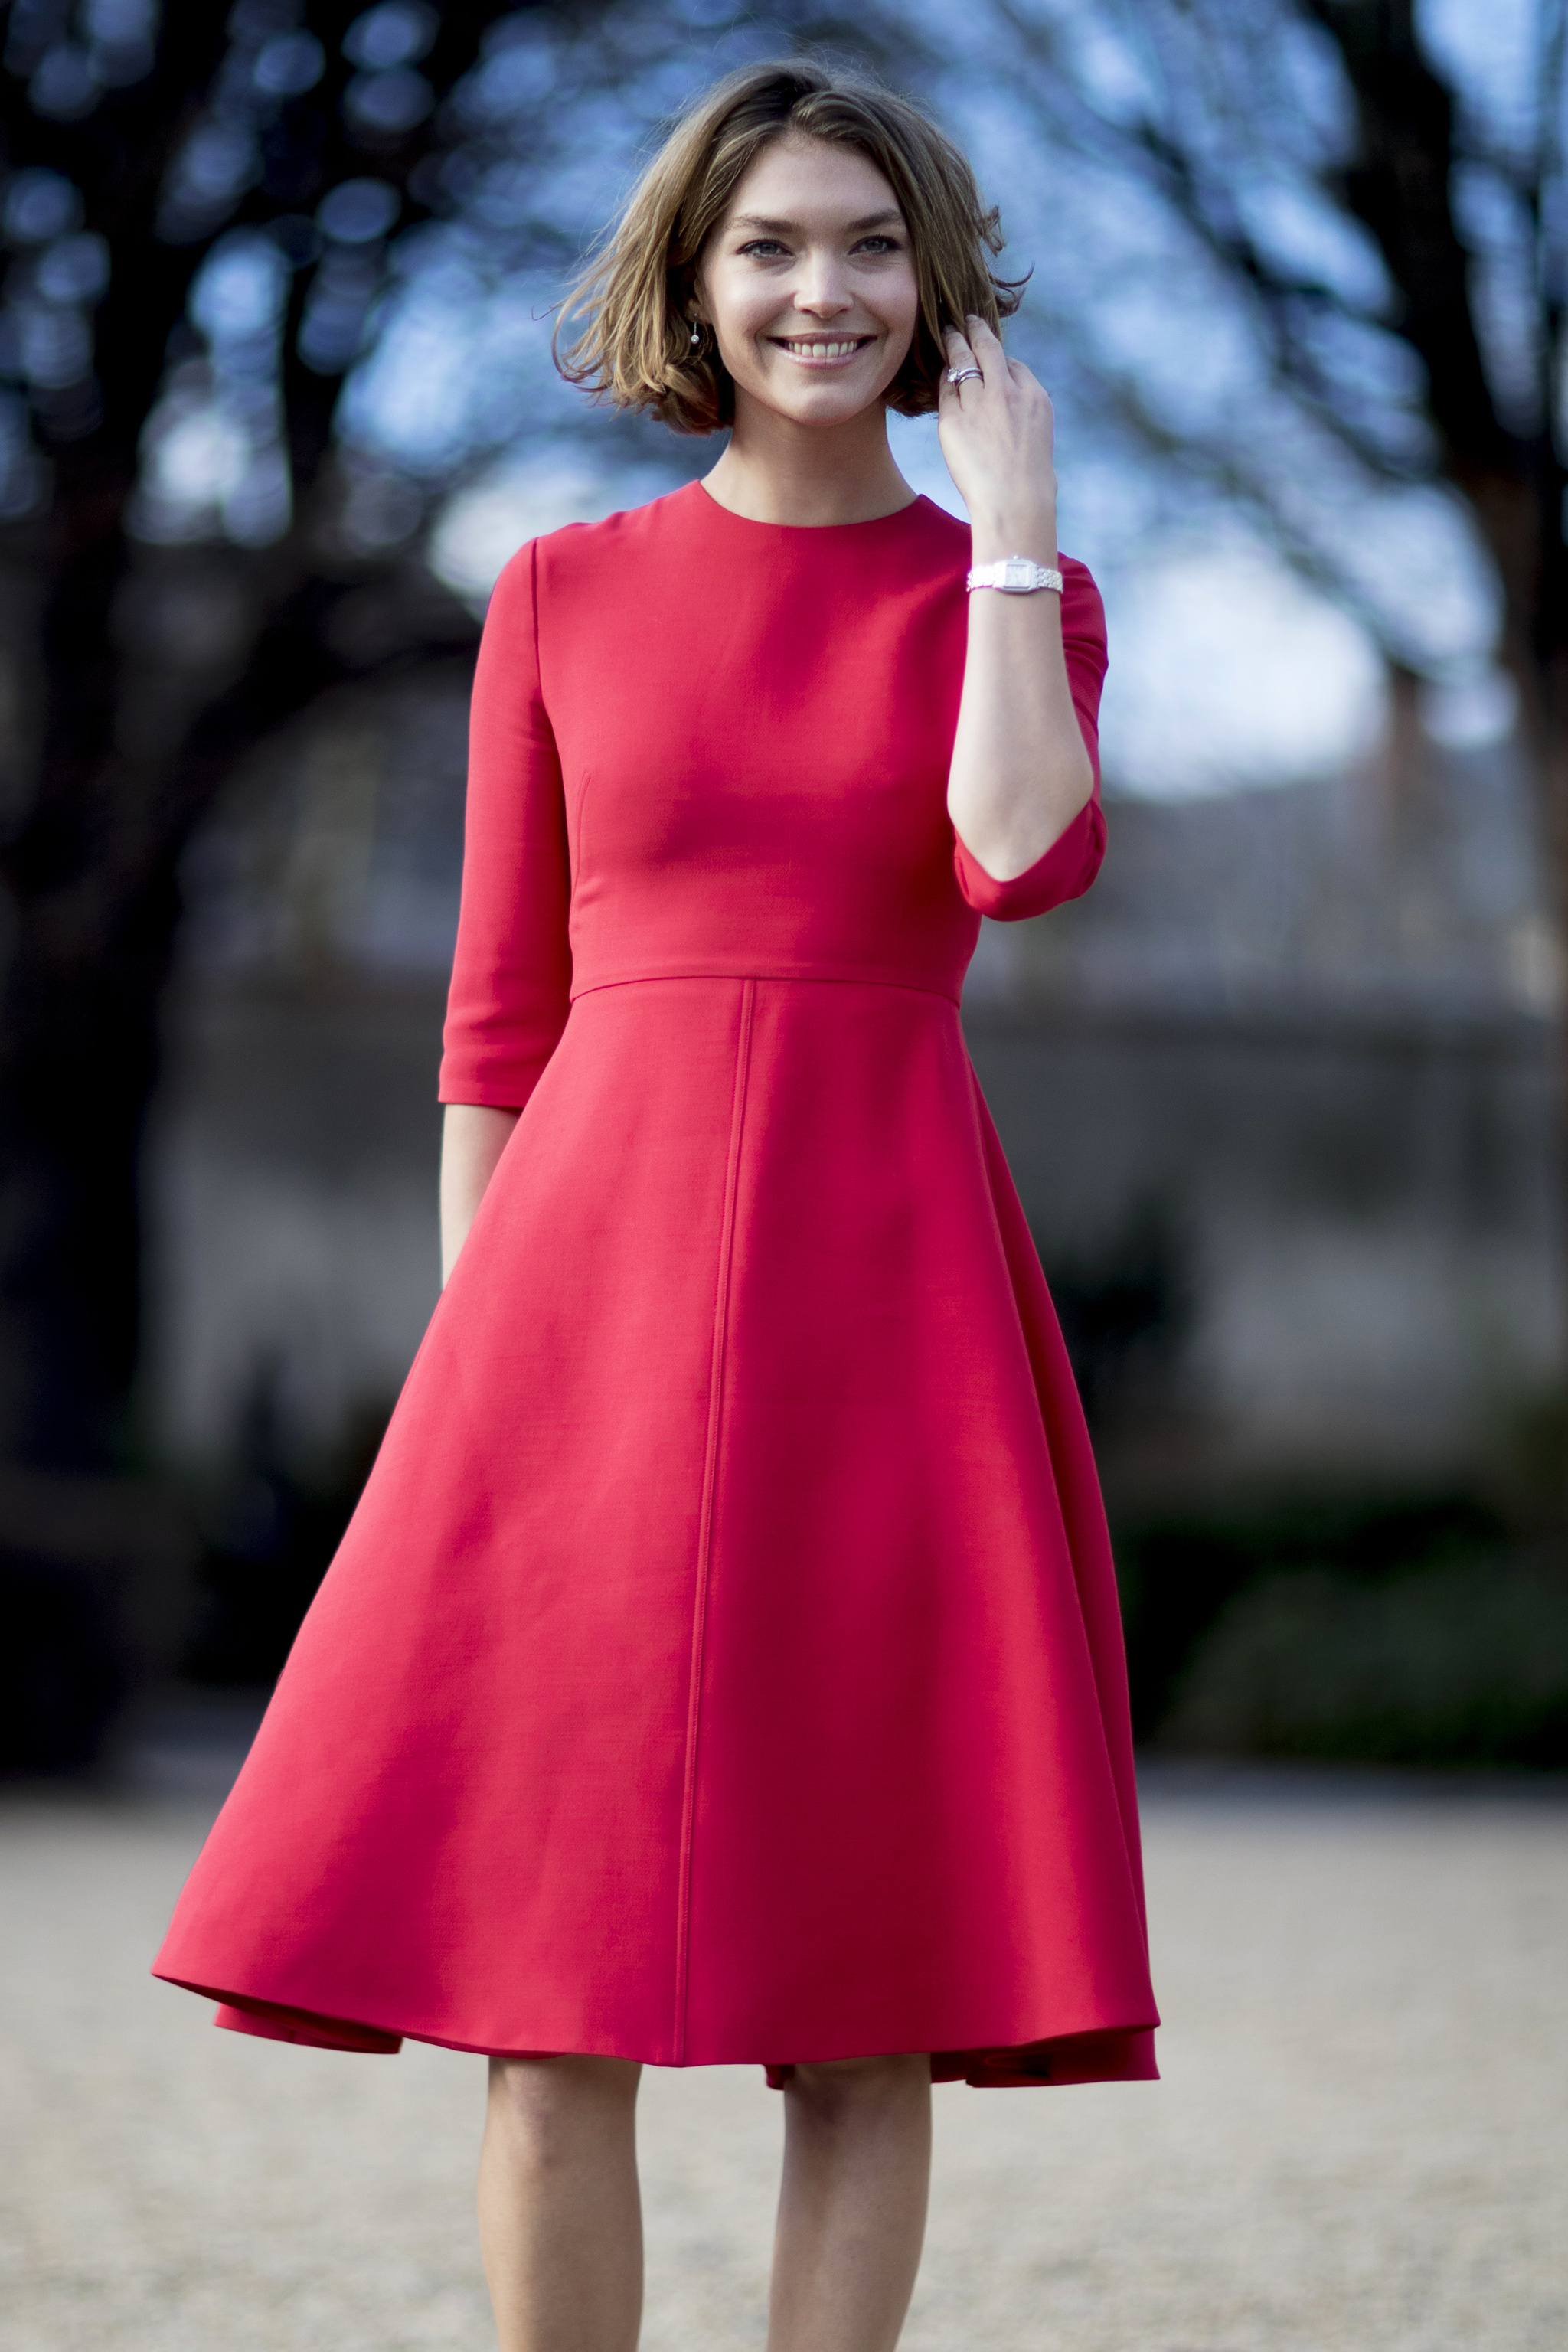 Los vestidos de color rojo serán tendencia este otoño-invierno 2022.